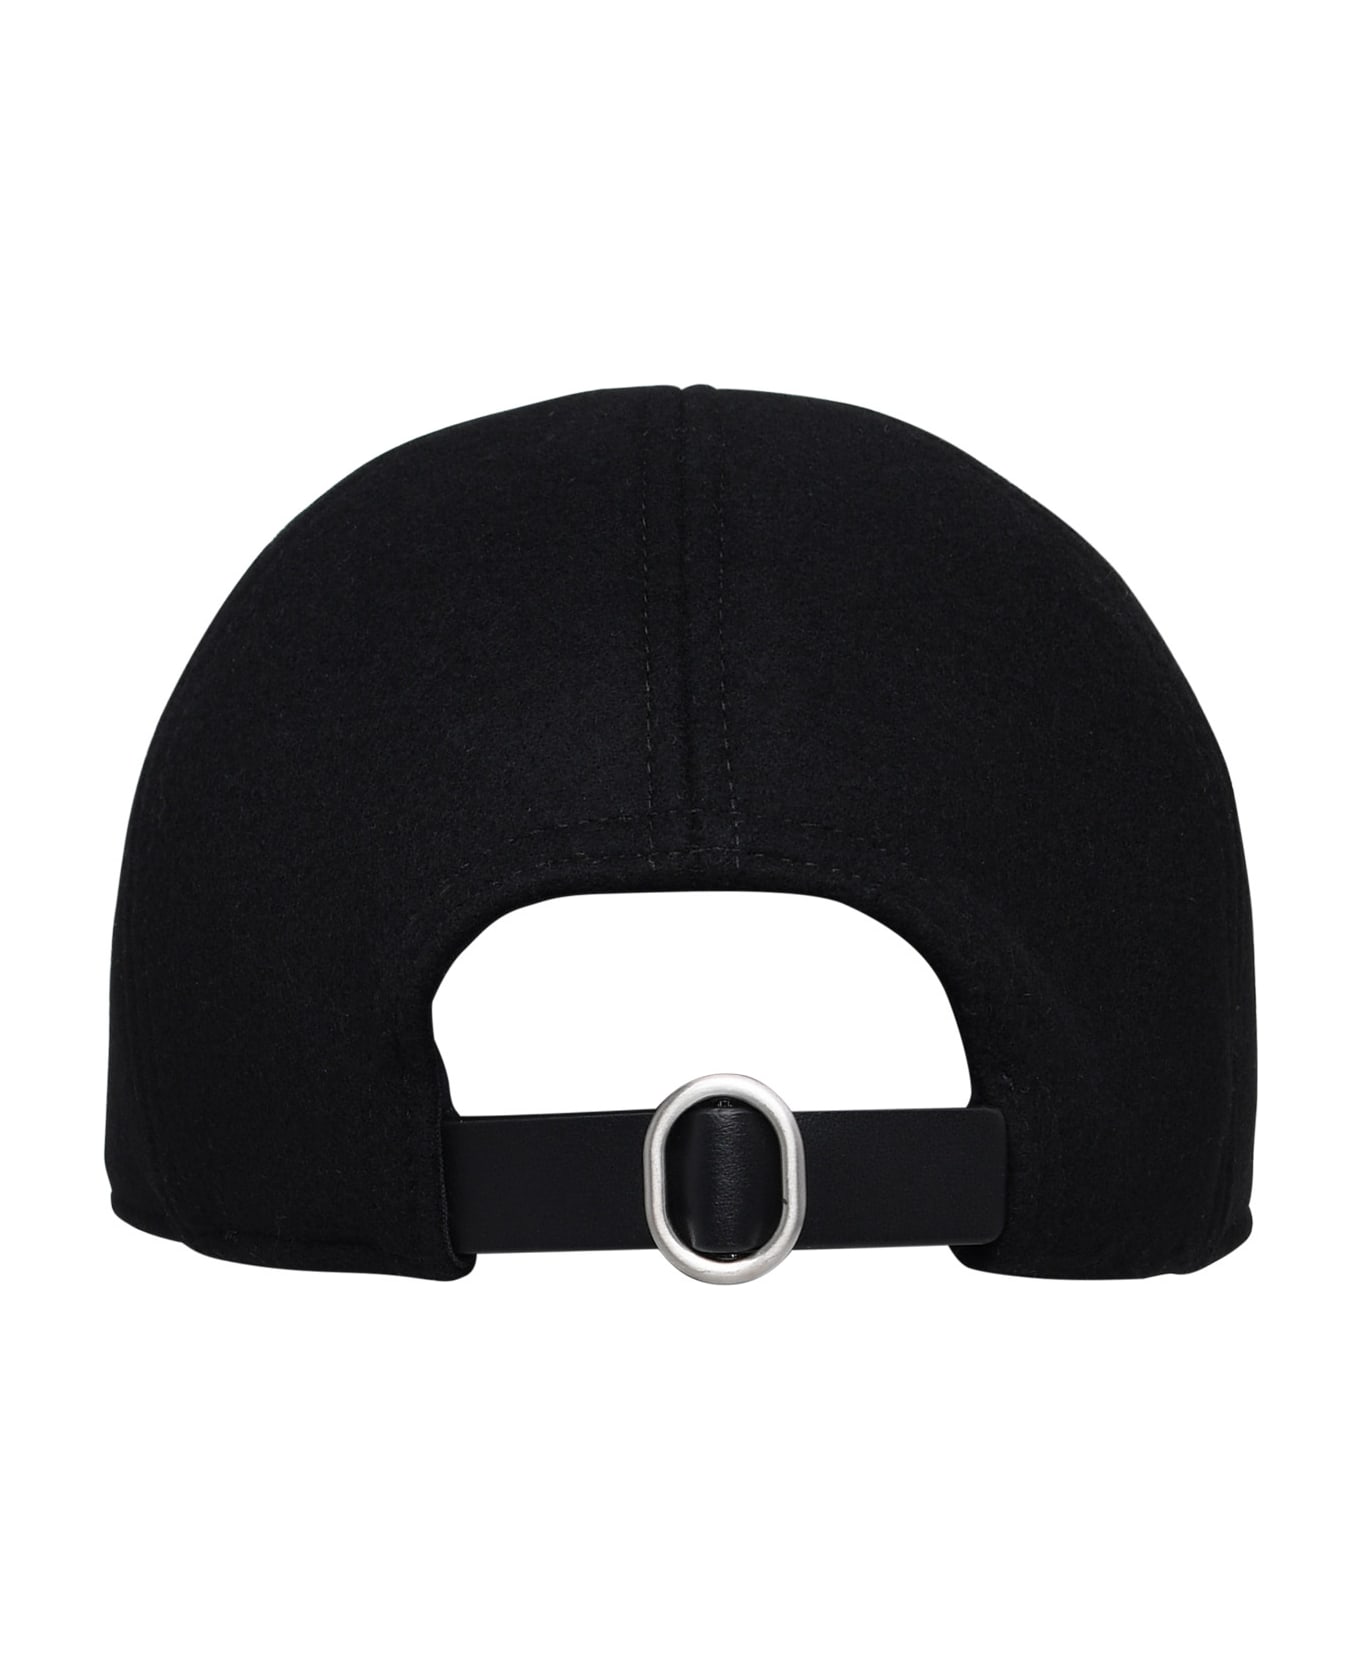 Jil Sander Black Cashmere Hat - Black 帽子